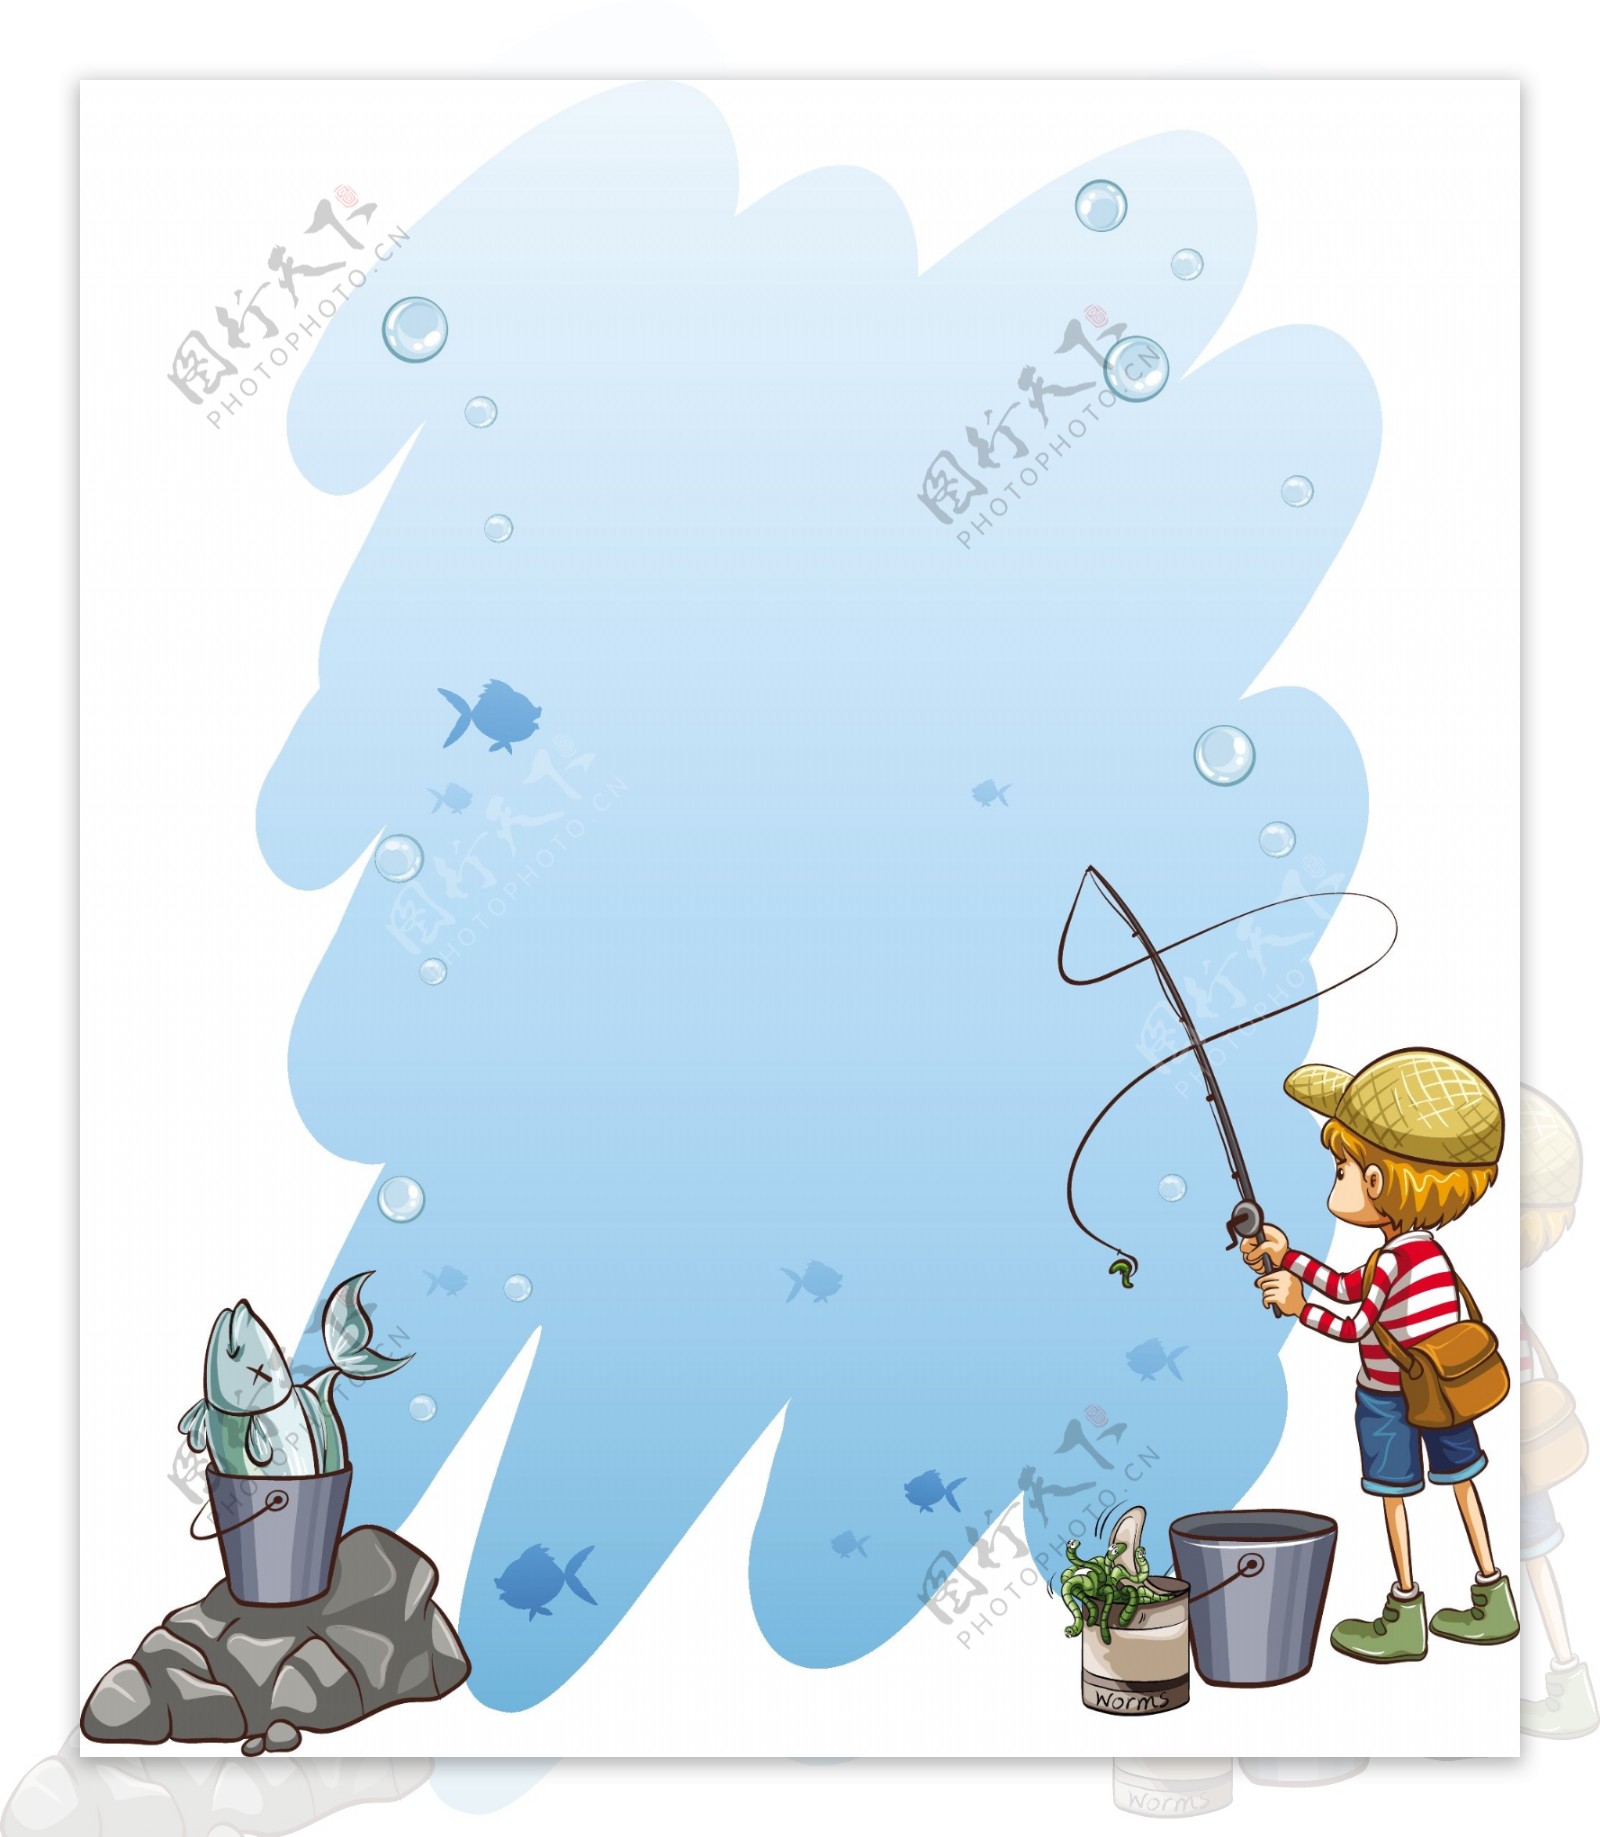 男孩钓鱼蓝色边框背景矢量素材